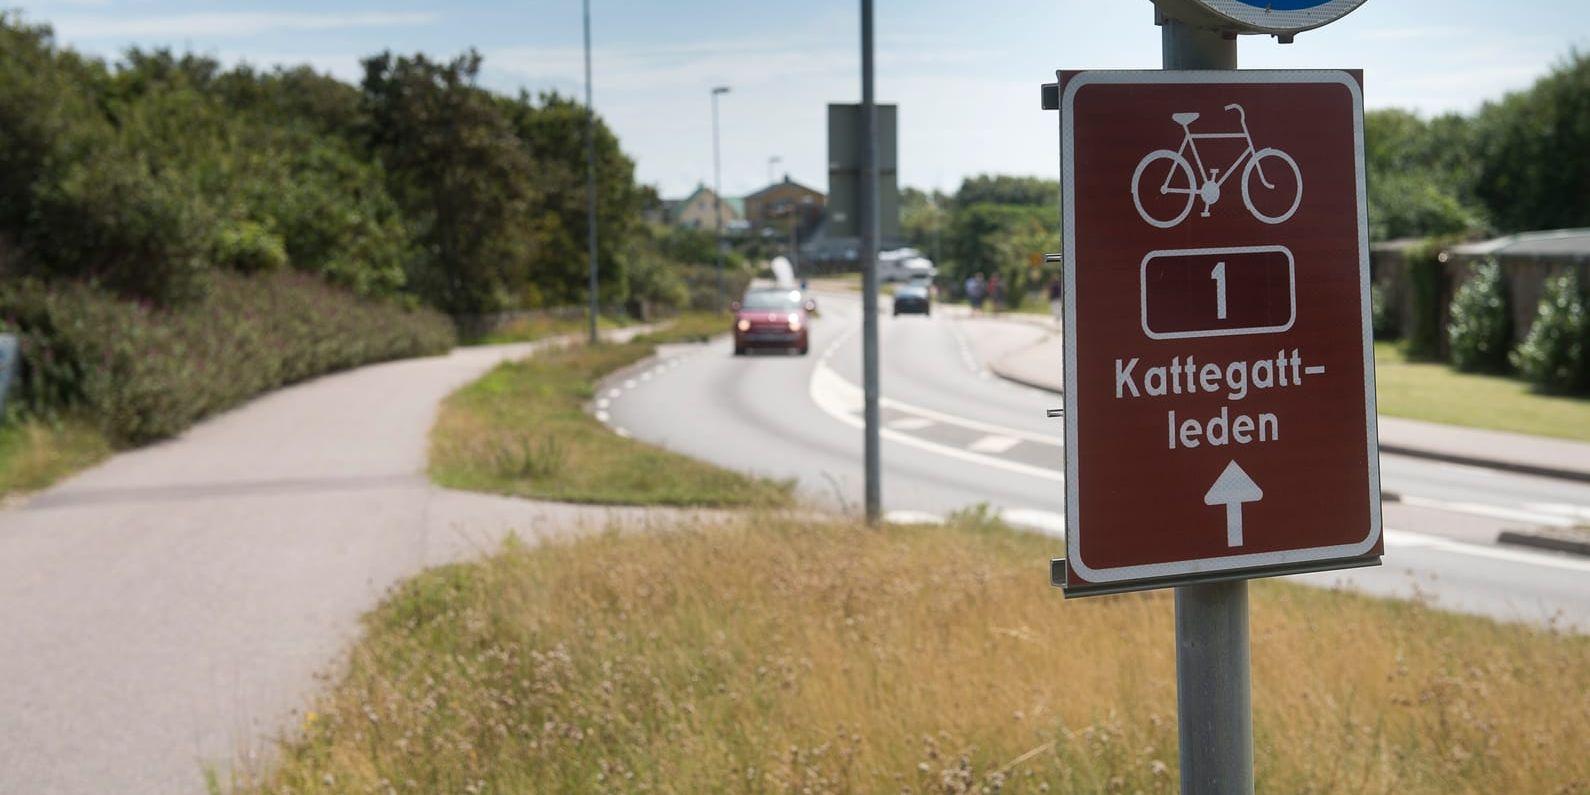 Så här ska det se ut, med separata cykel- och bilvägar längs Kattegattleden